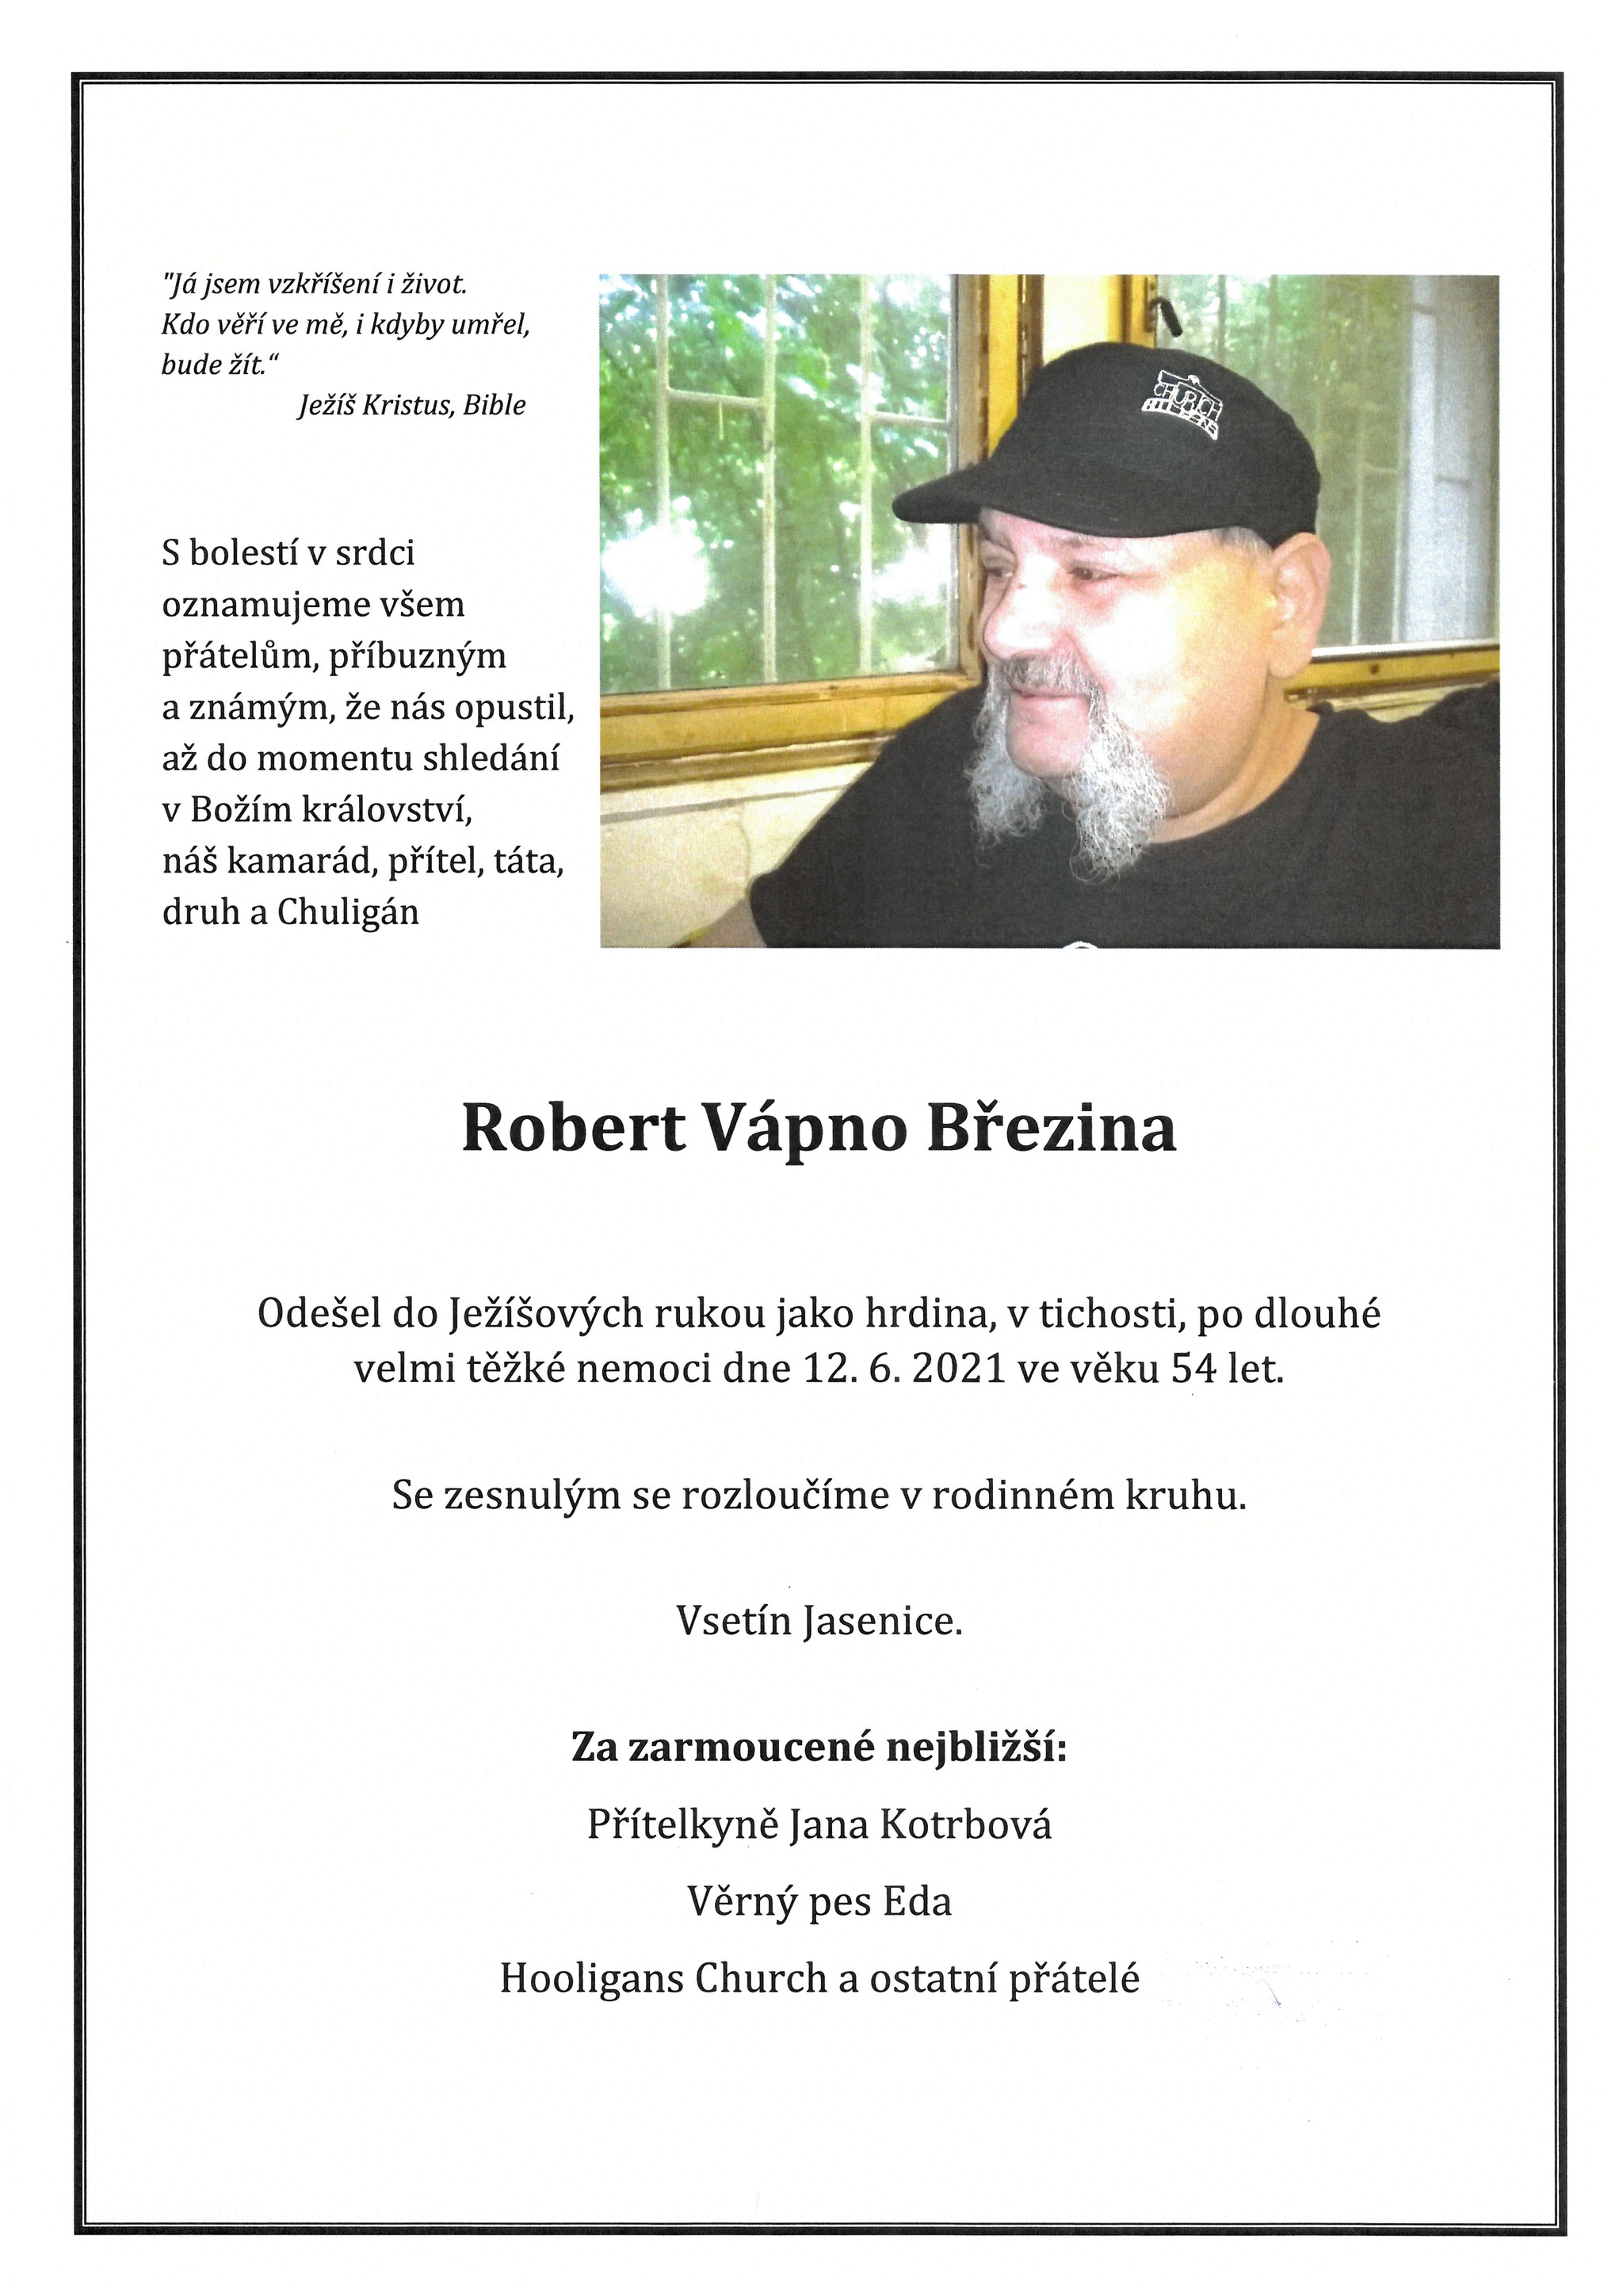 Robert Vápno Březina